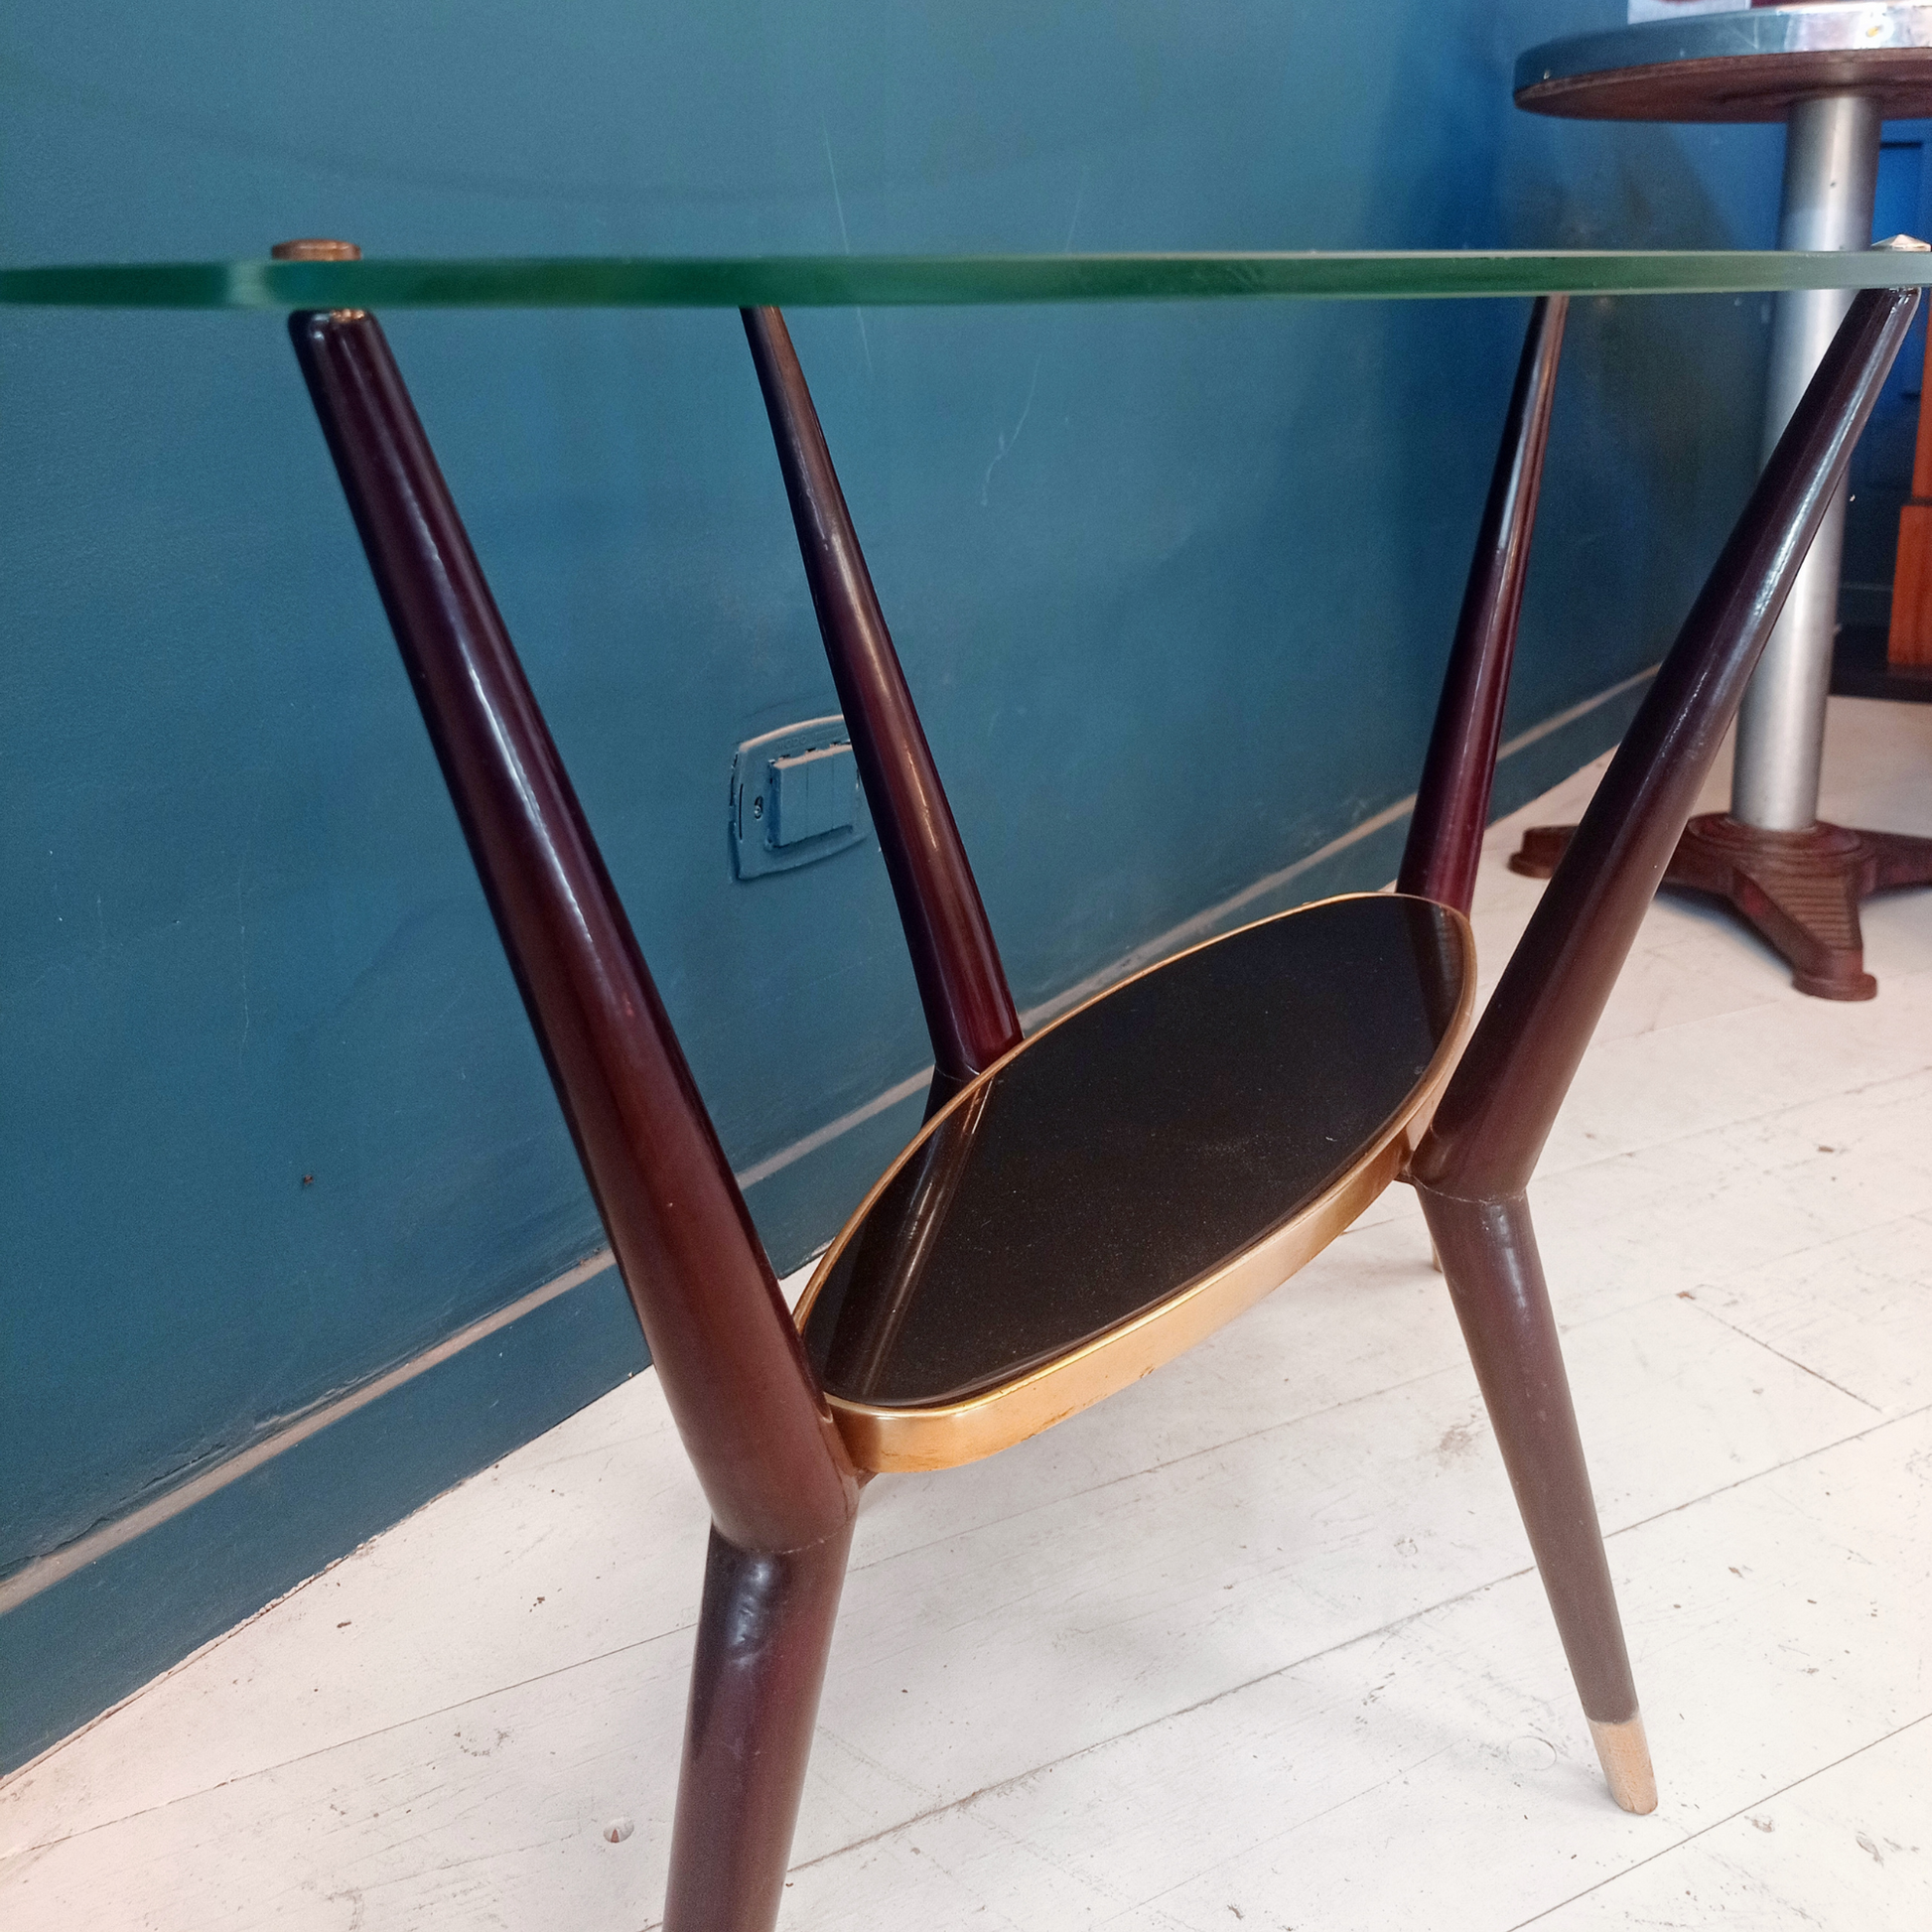 Tavolino da caffè vintage ovale con due ripiani in vetro, gambe in legno e borchie in ottone risalente agli anni '50. 